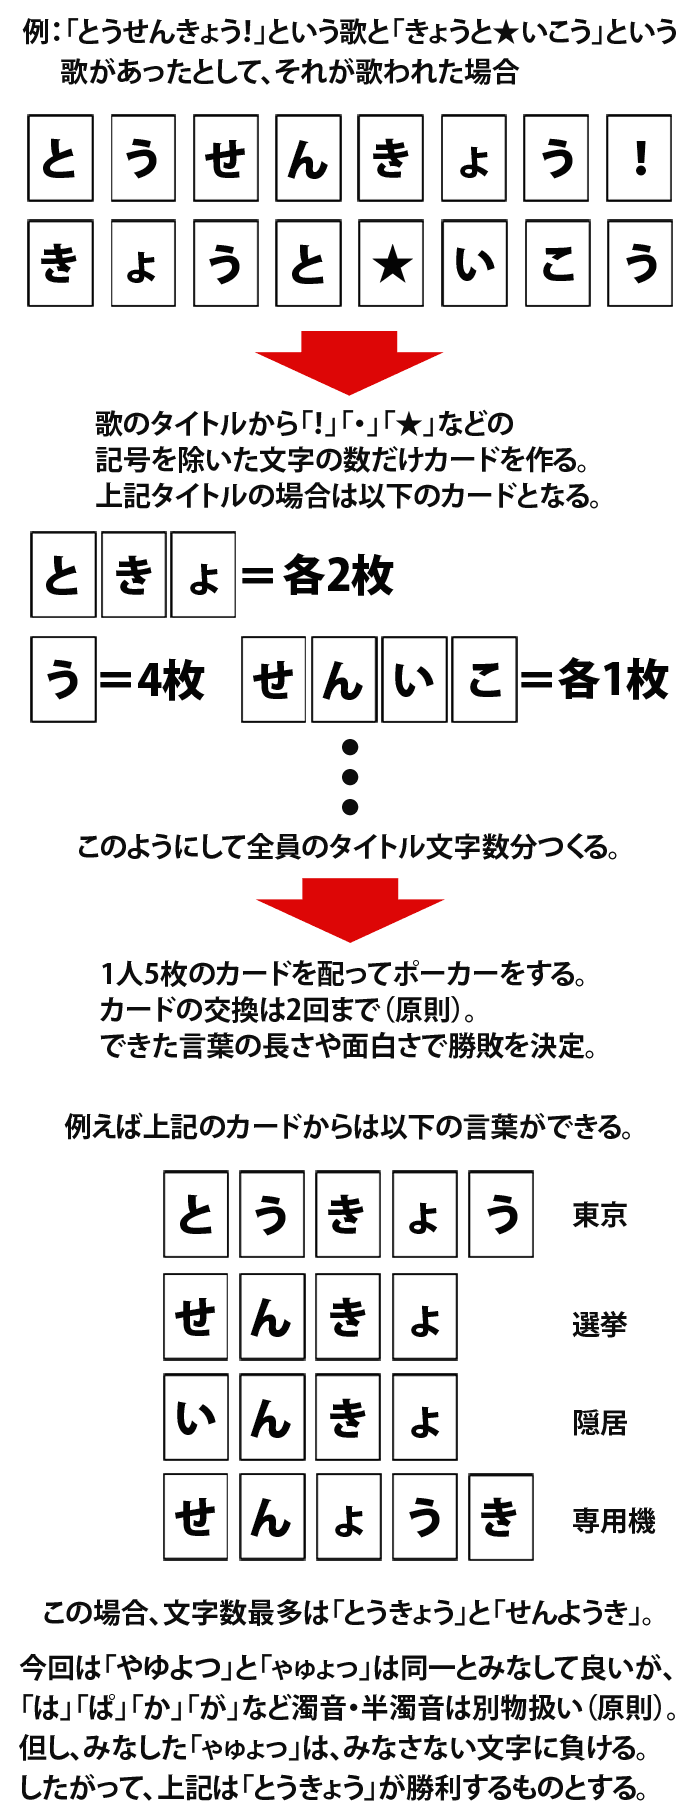 2015年Xmasカラオケ会・ひらがなポーカー説明